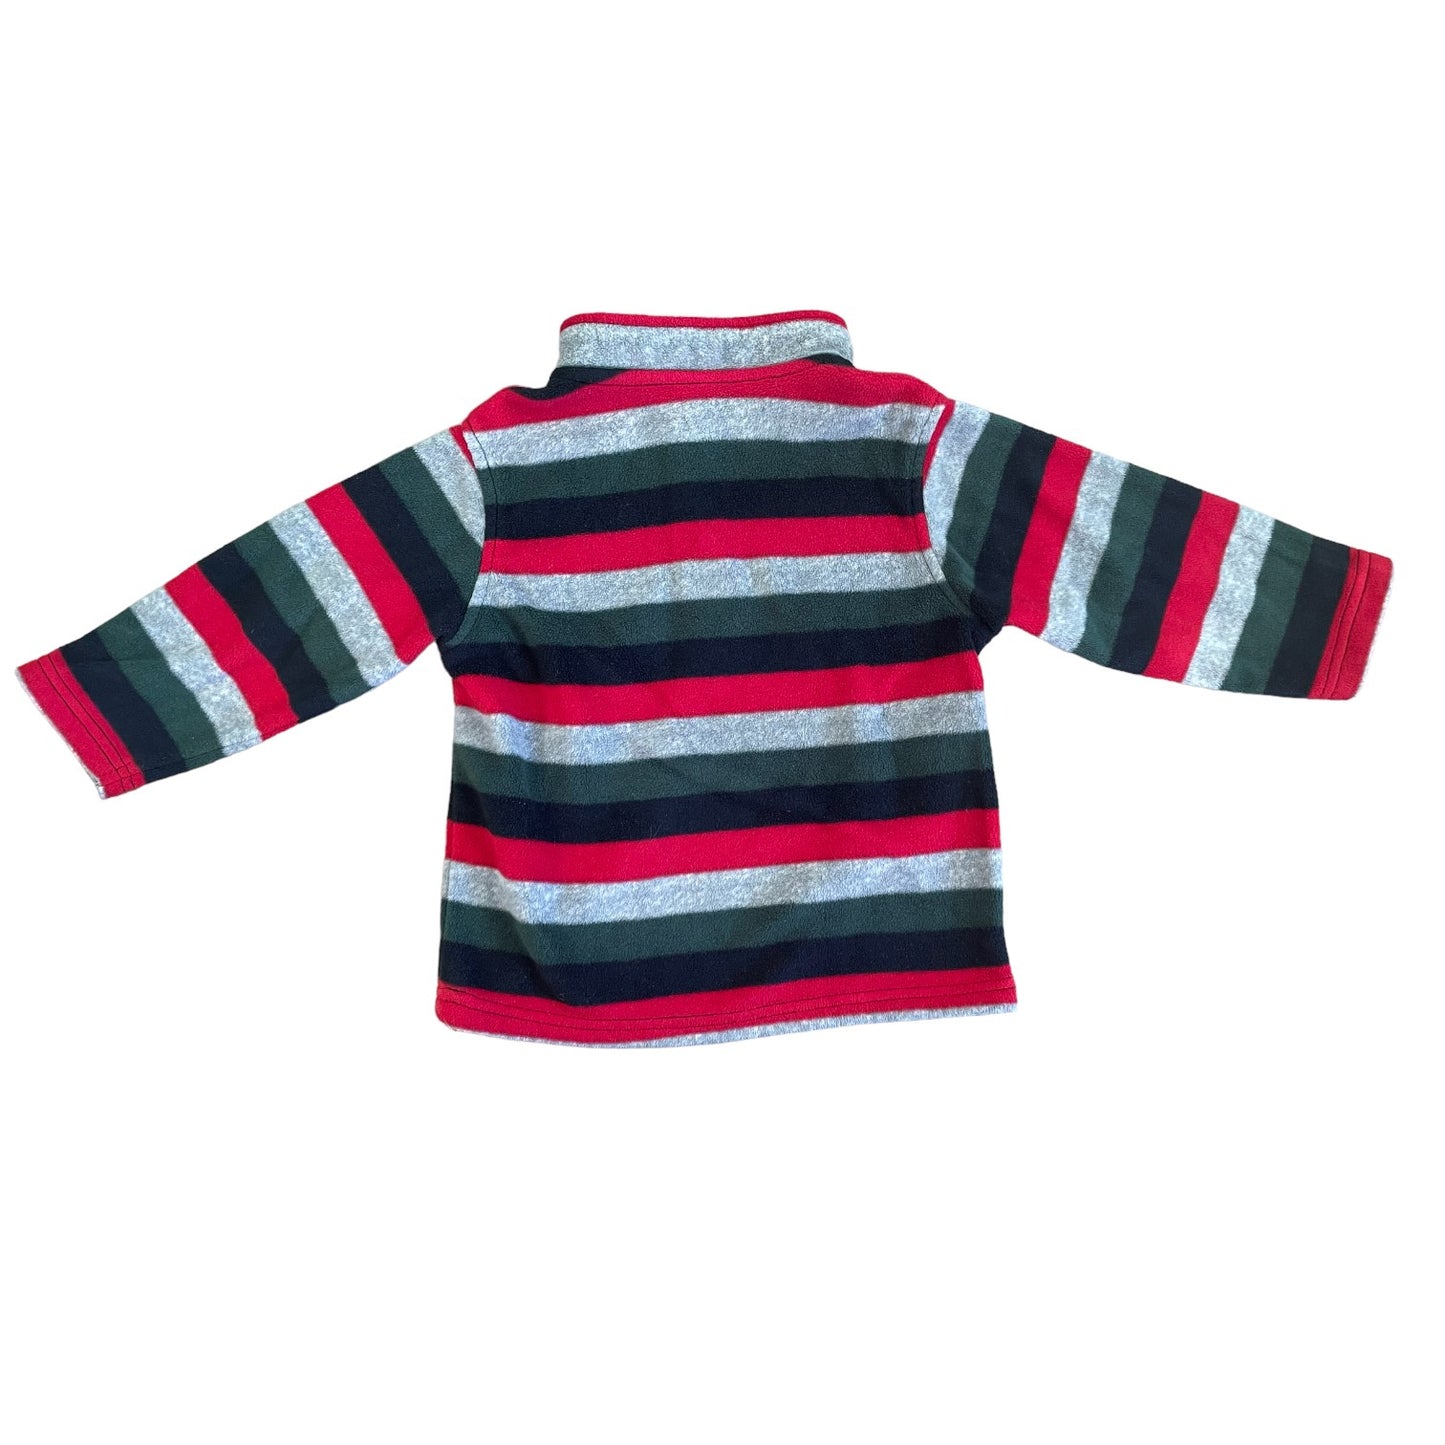 Gymboree Boys Fleece Sweater Size 2T-3T